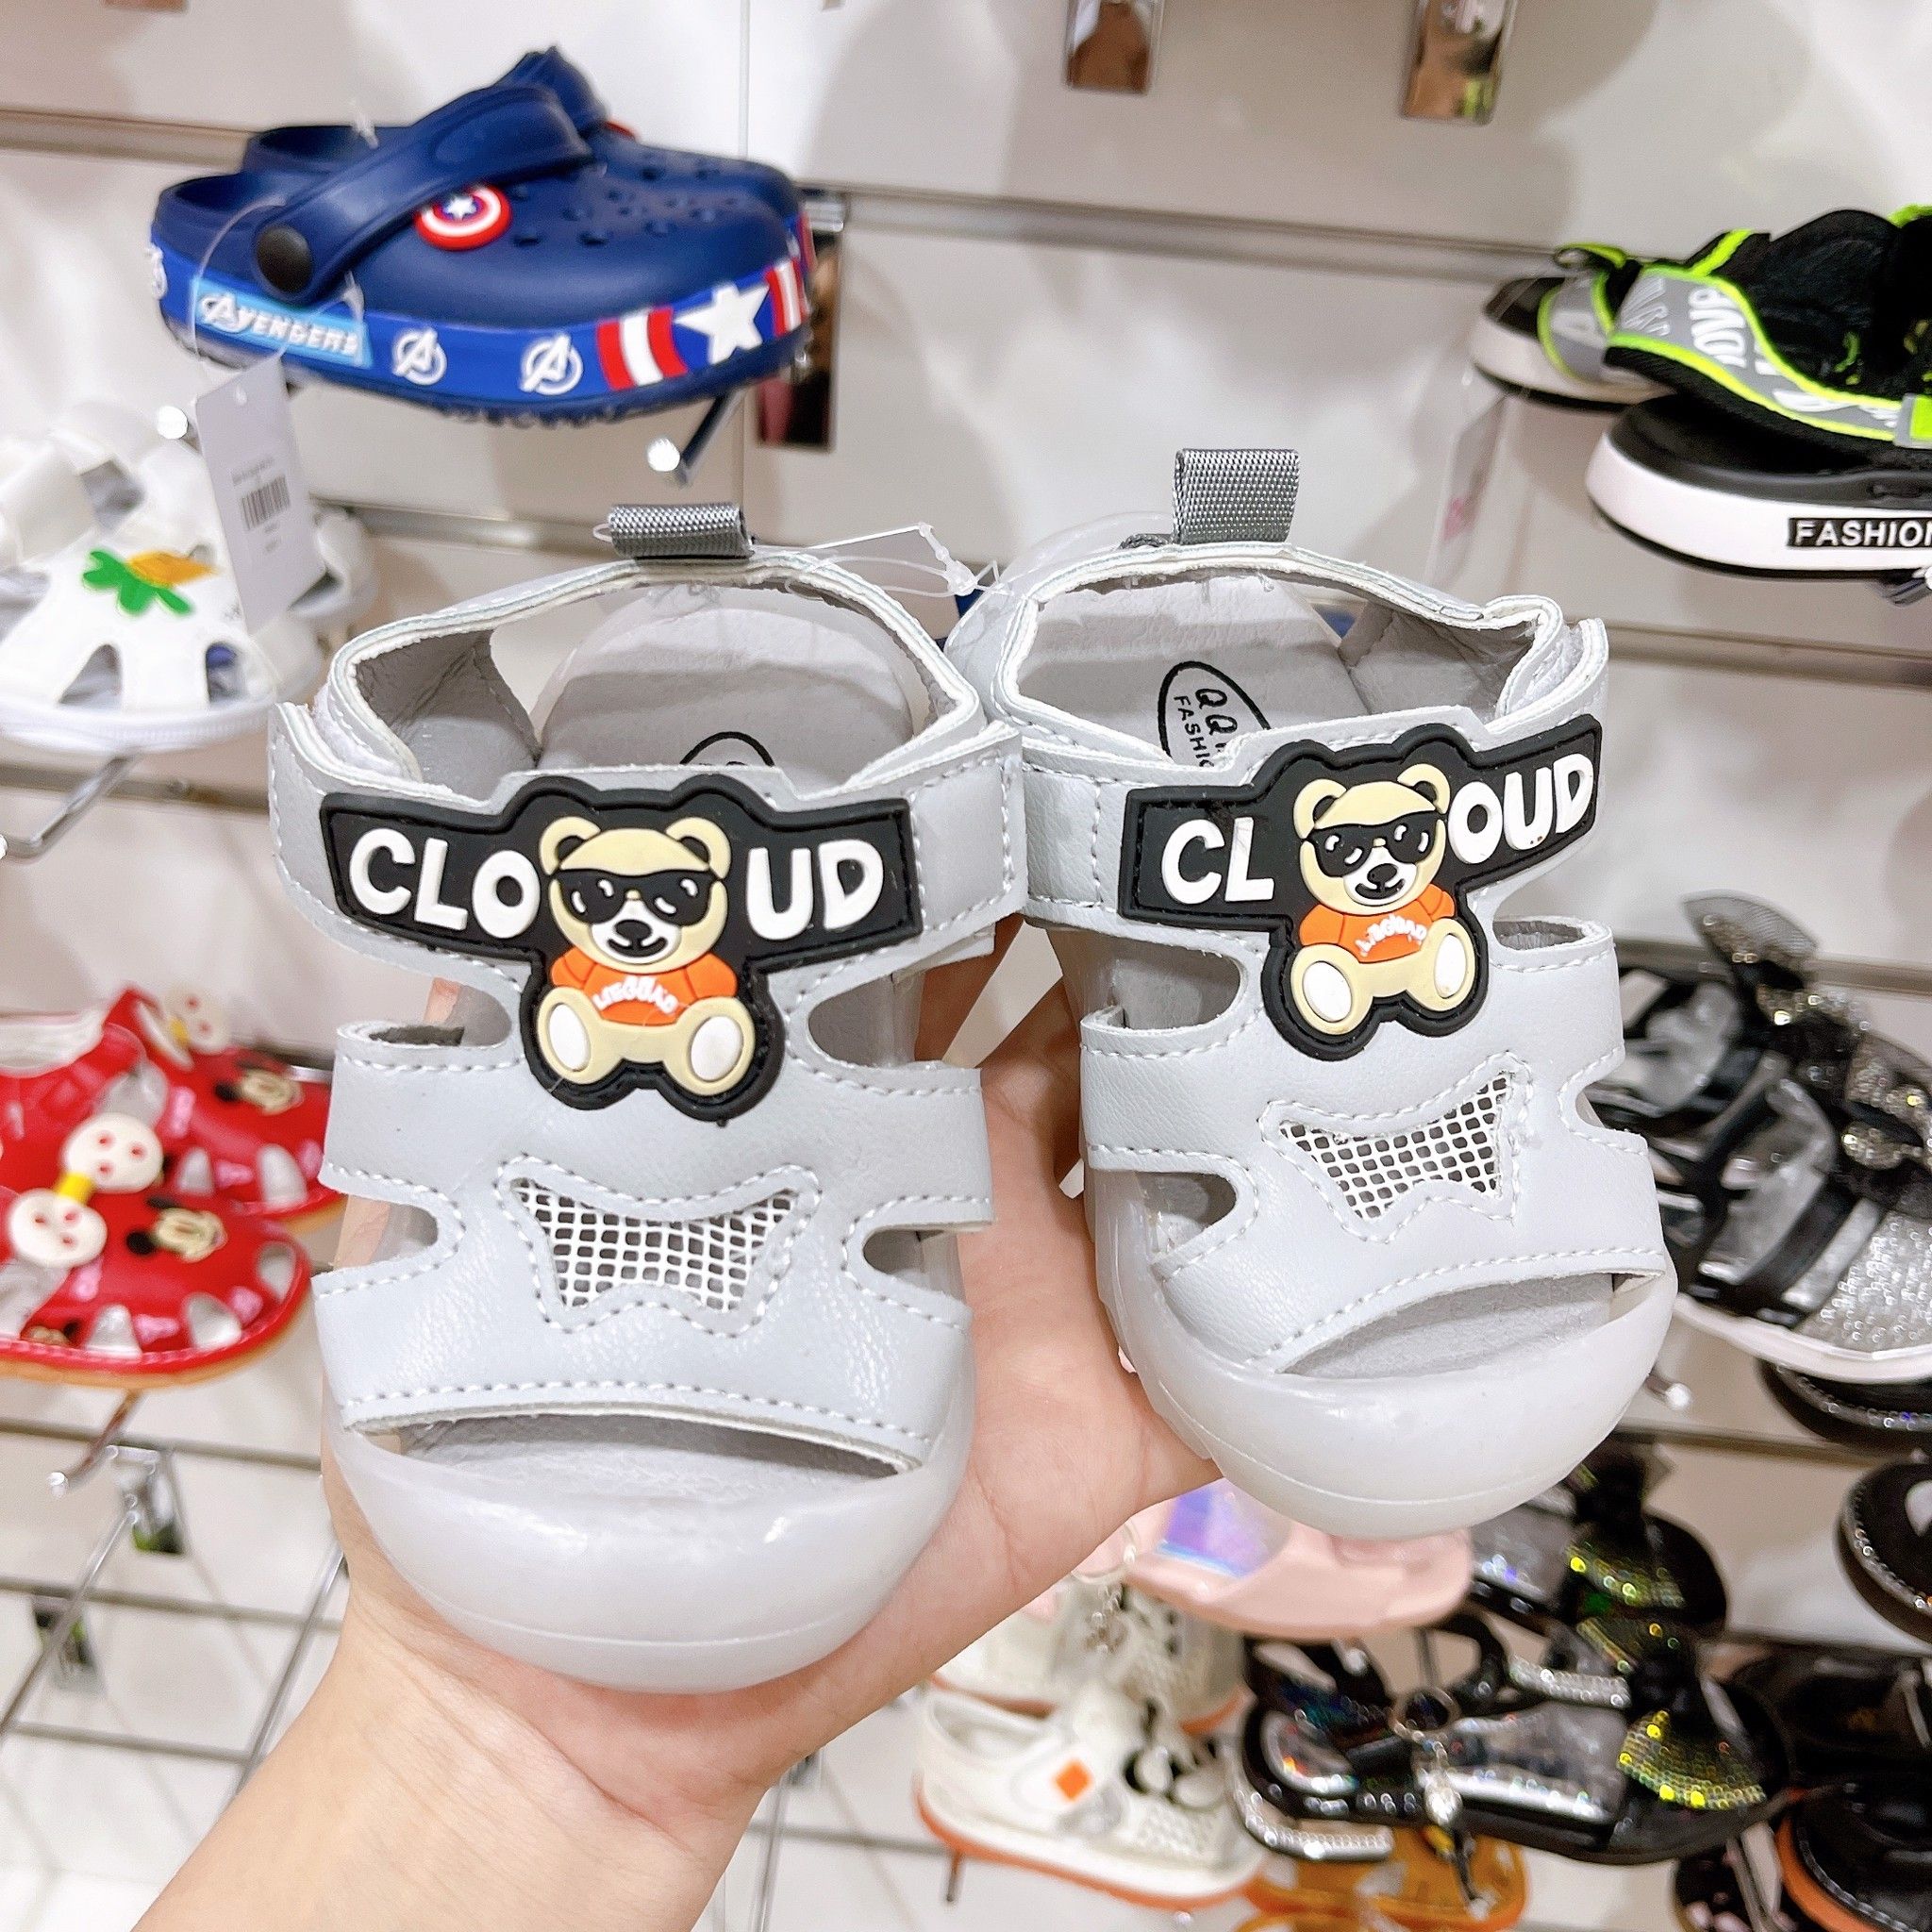  [10.5cm] Giày Sandal Cho Bé Trai - Xám Gấu Cloud 